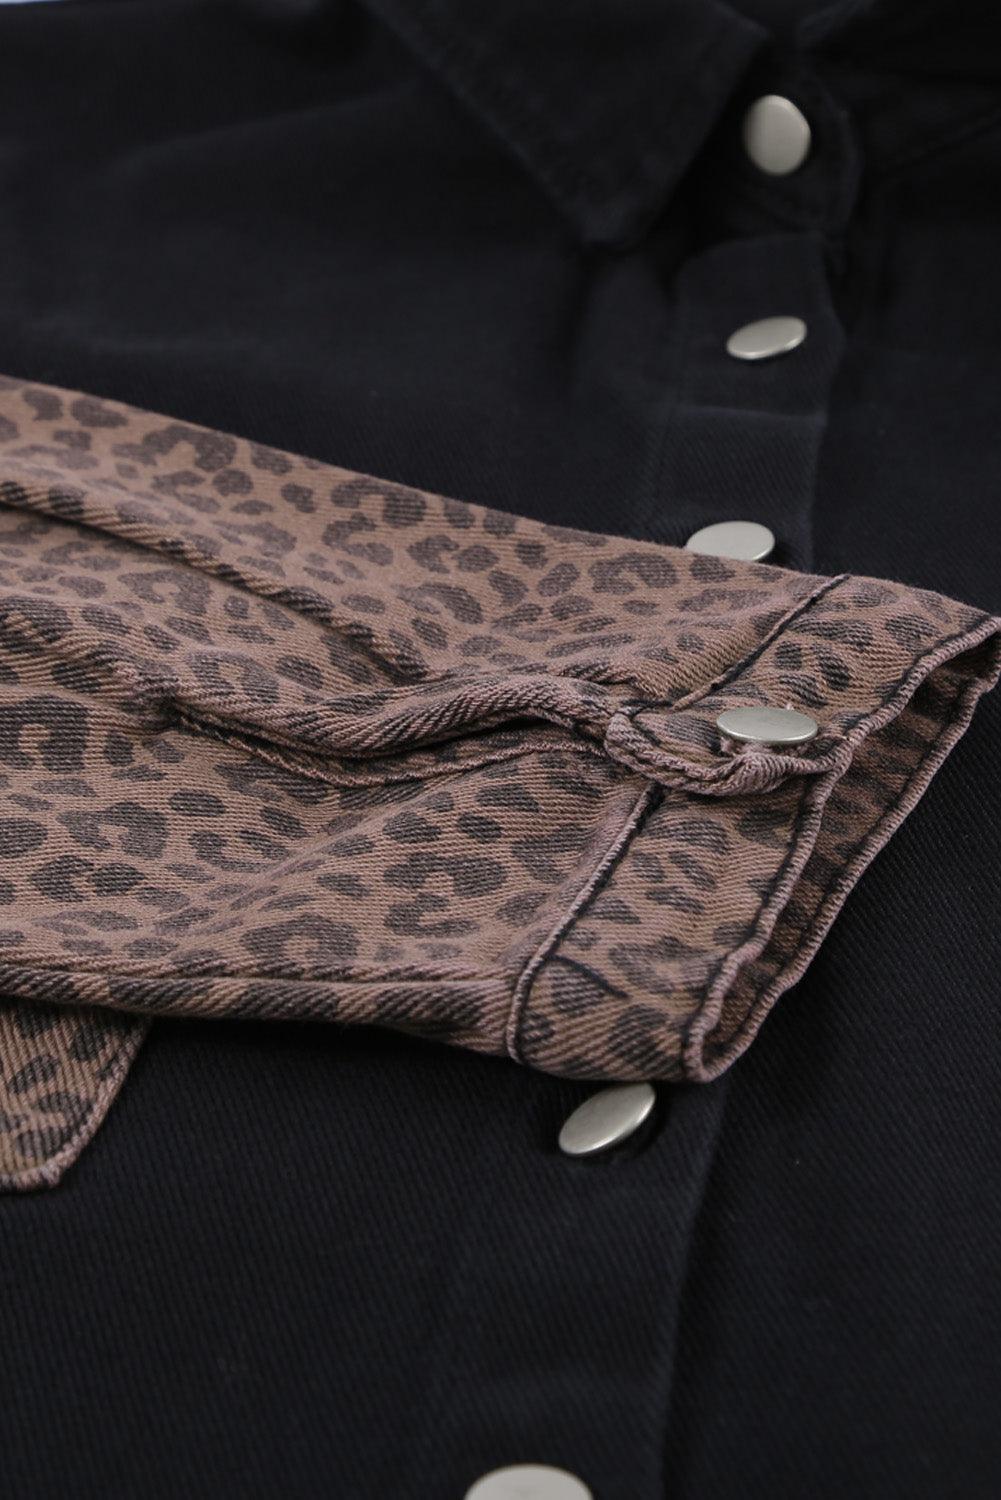 Blank Apparel - Black Contrast Leopard Denim Jacket - L & M Kee, LLC